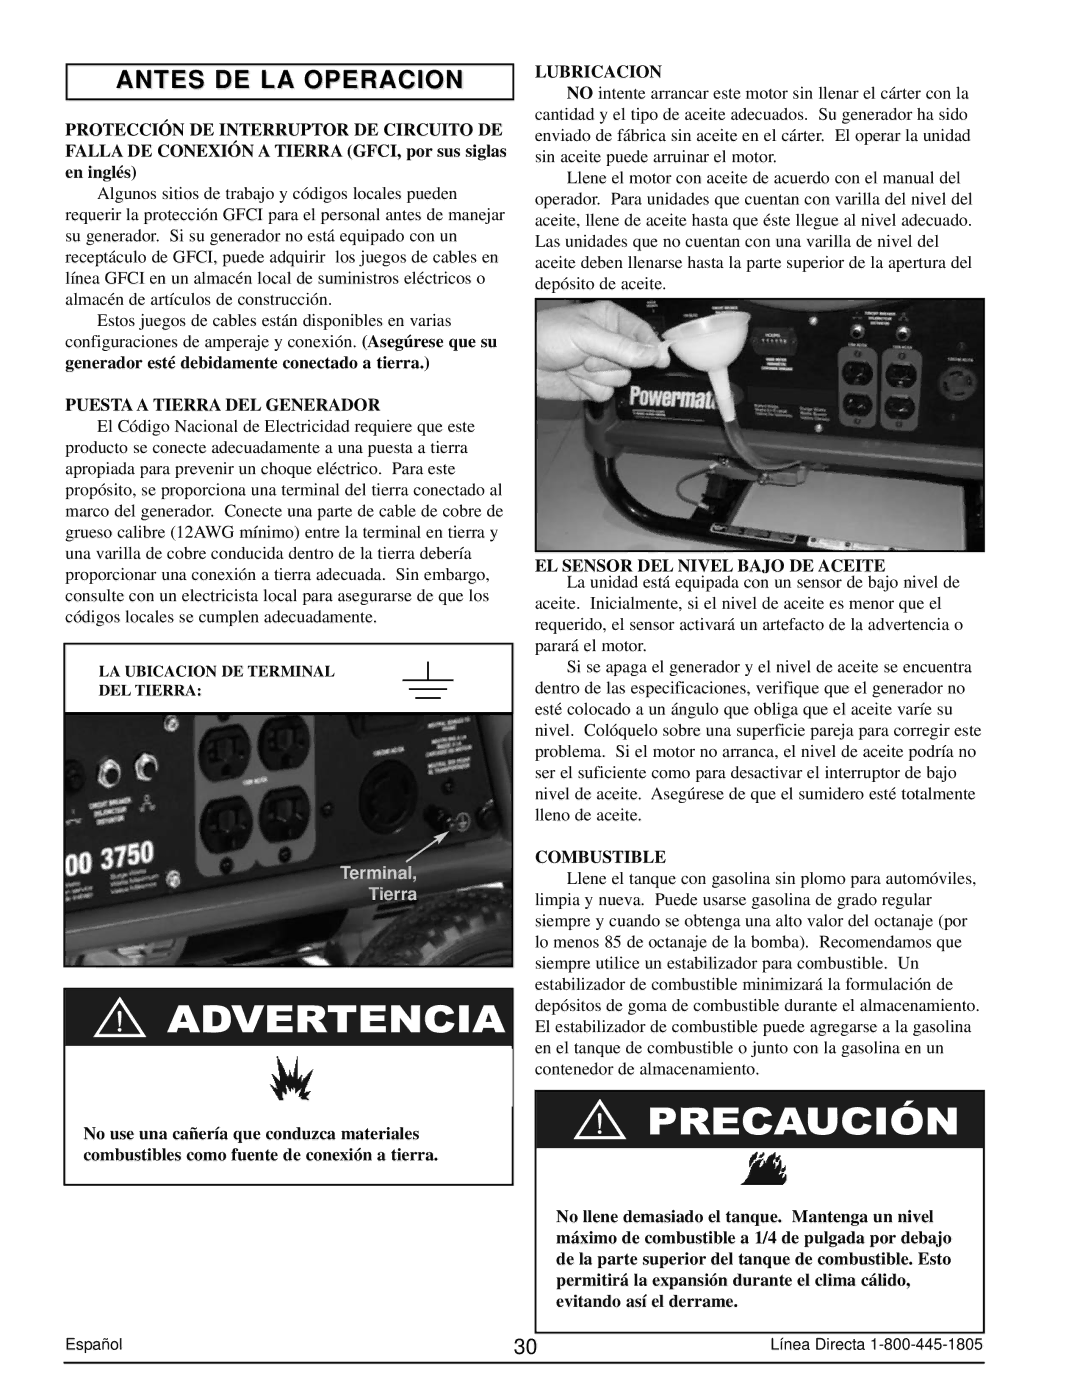 Powermate PM0103007 Antes DE LA Operacion, Puesta a Tierra DEL Generador, Lubricacion, EL Sensor DEL Nivel Bajo DE Aceite 